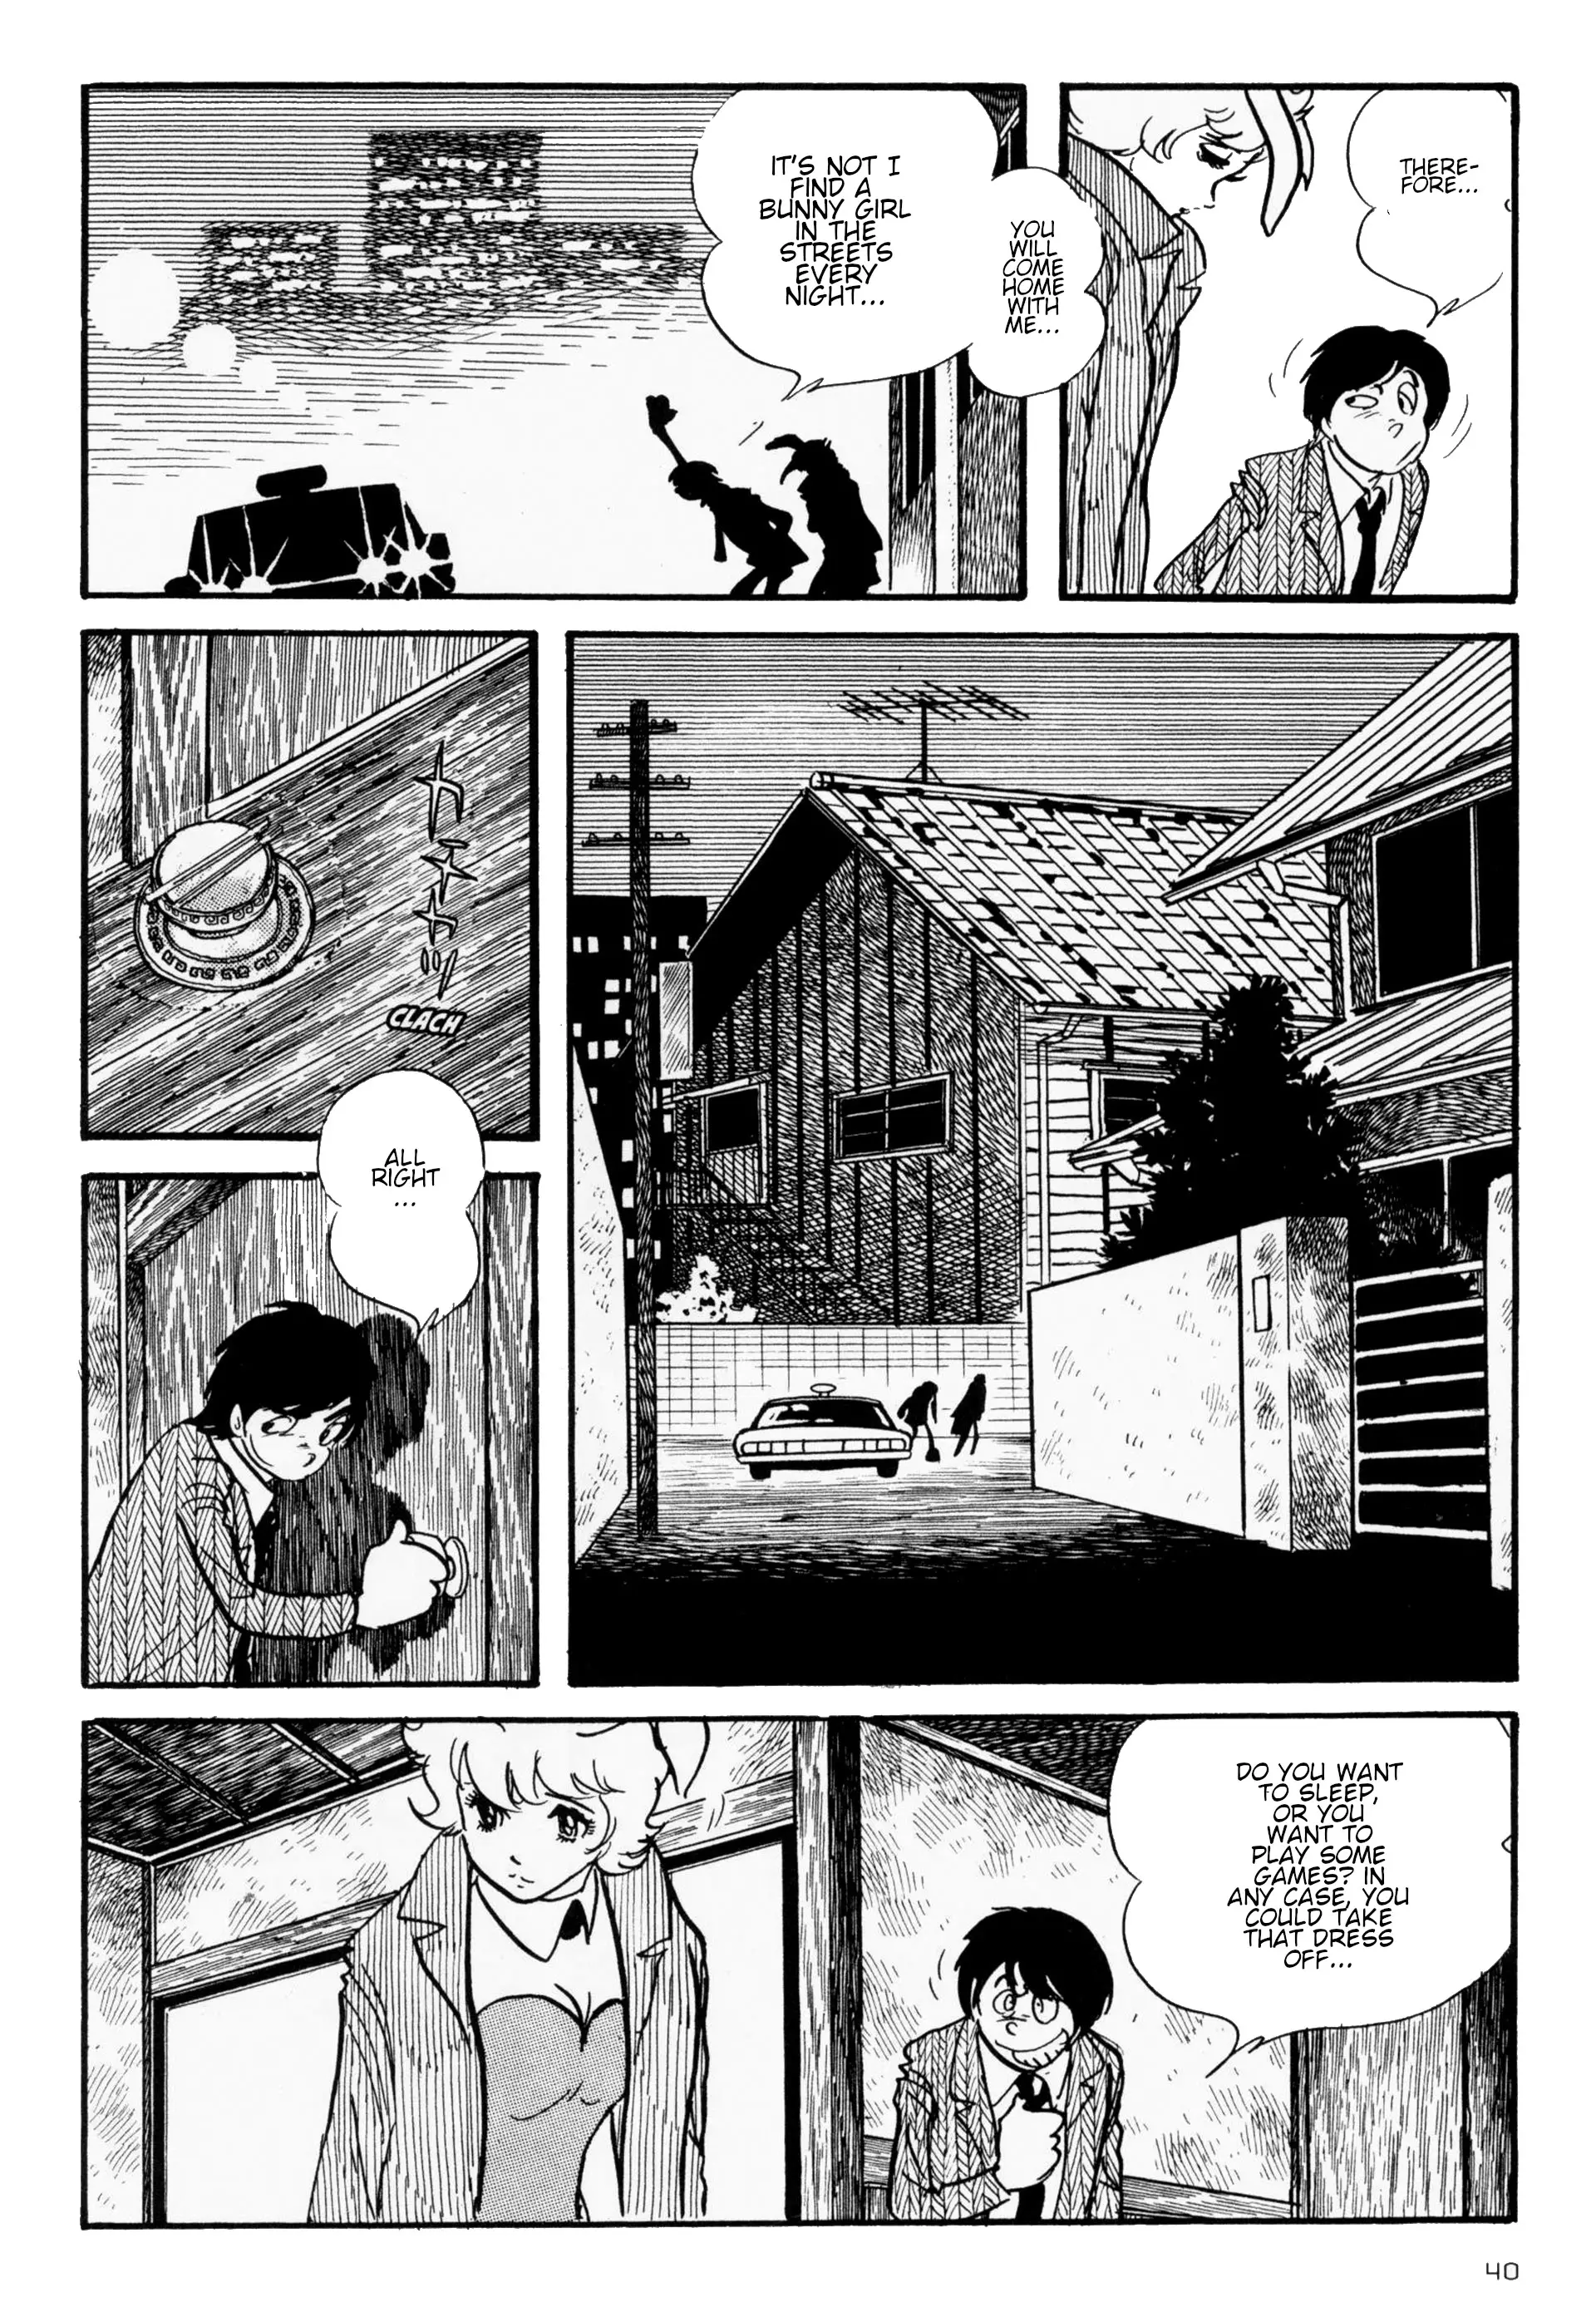 Forbidden Ishinomori - 2 page 6-0fe1badf